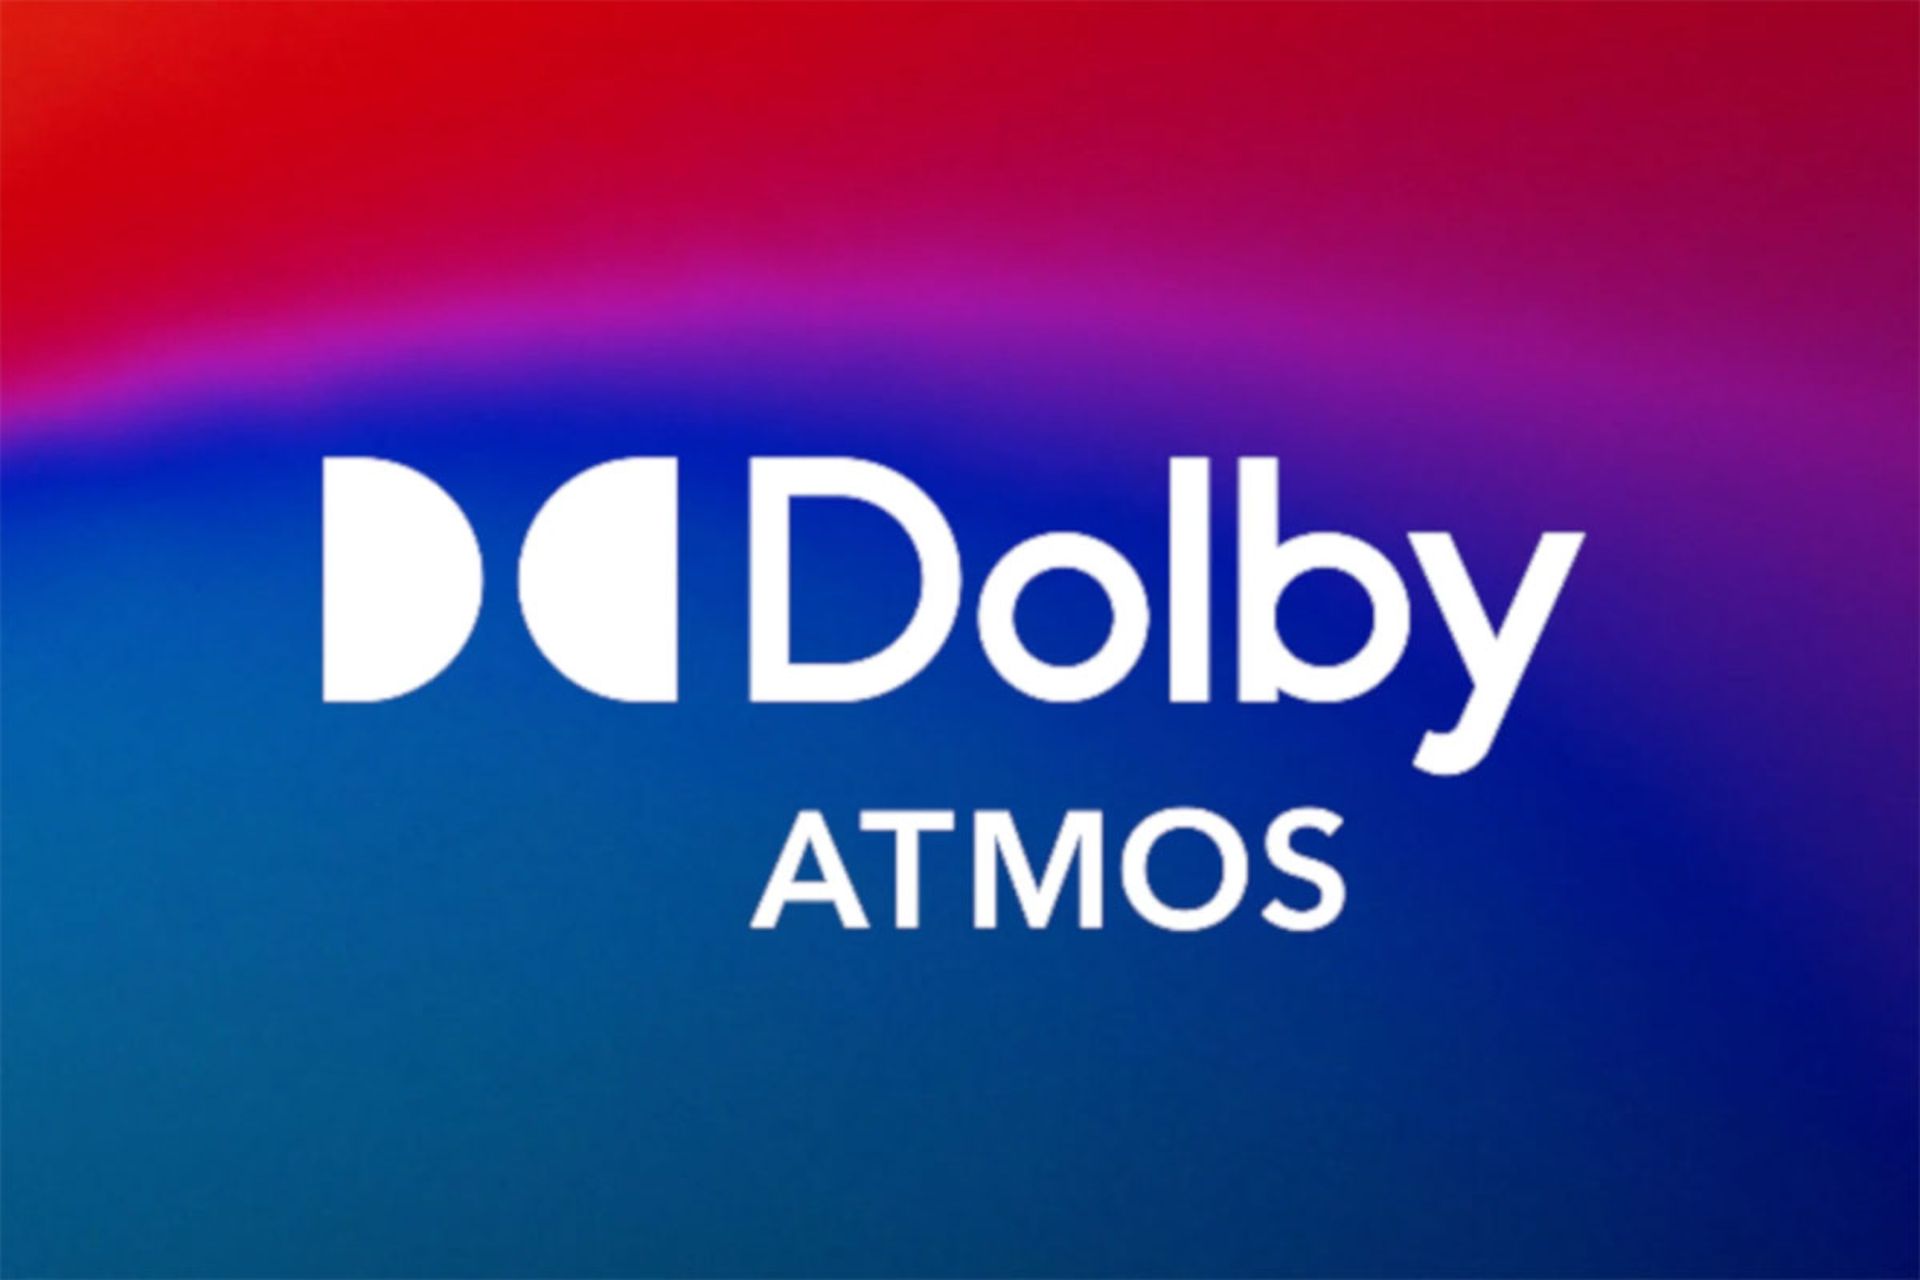 مرجع متخصصين ايران دالبي اتموس / Dolby Atmos موسيقي